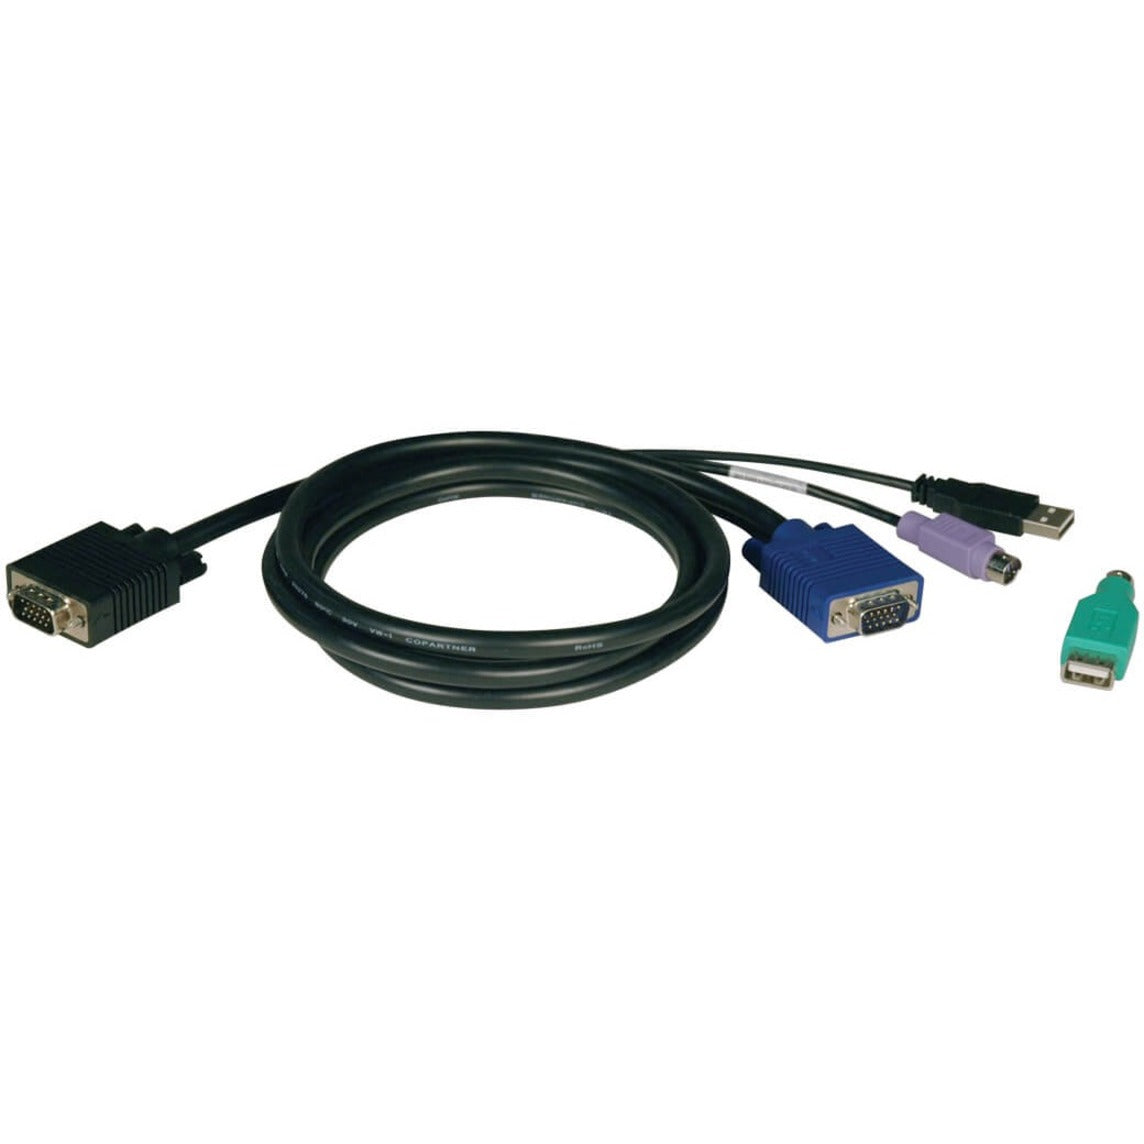 Tripp Lite P780-010 Câble KVM pour B040 et B042 KVM 10ft - Gestion facile des câbles et performances supérieures. Marque: Tripp Lite